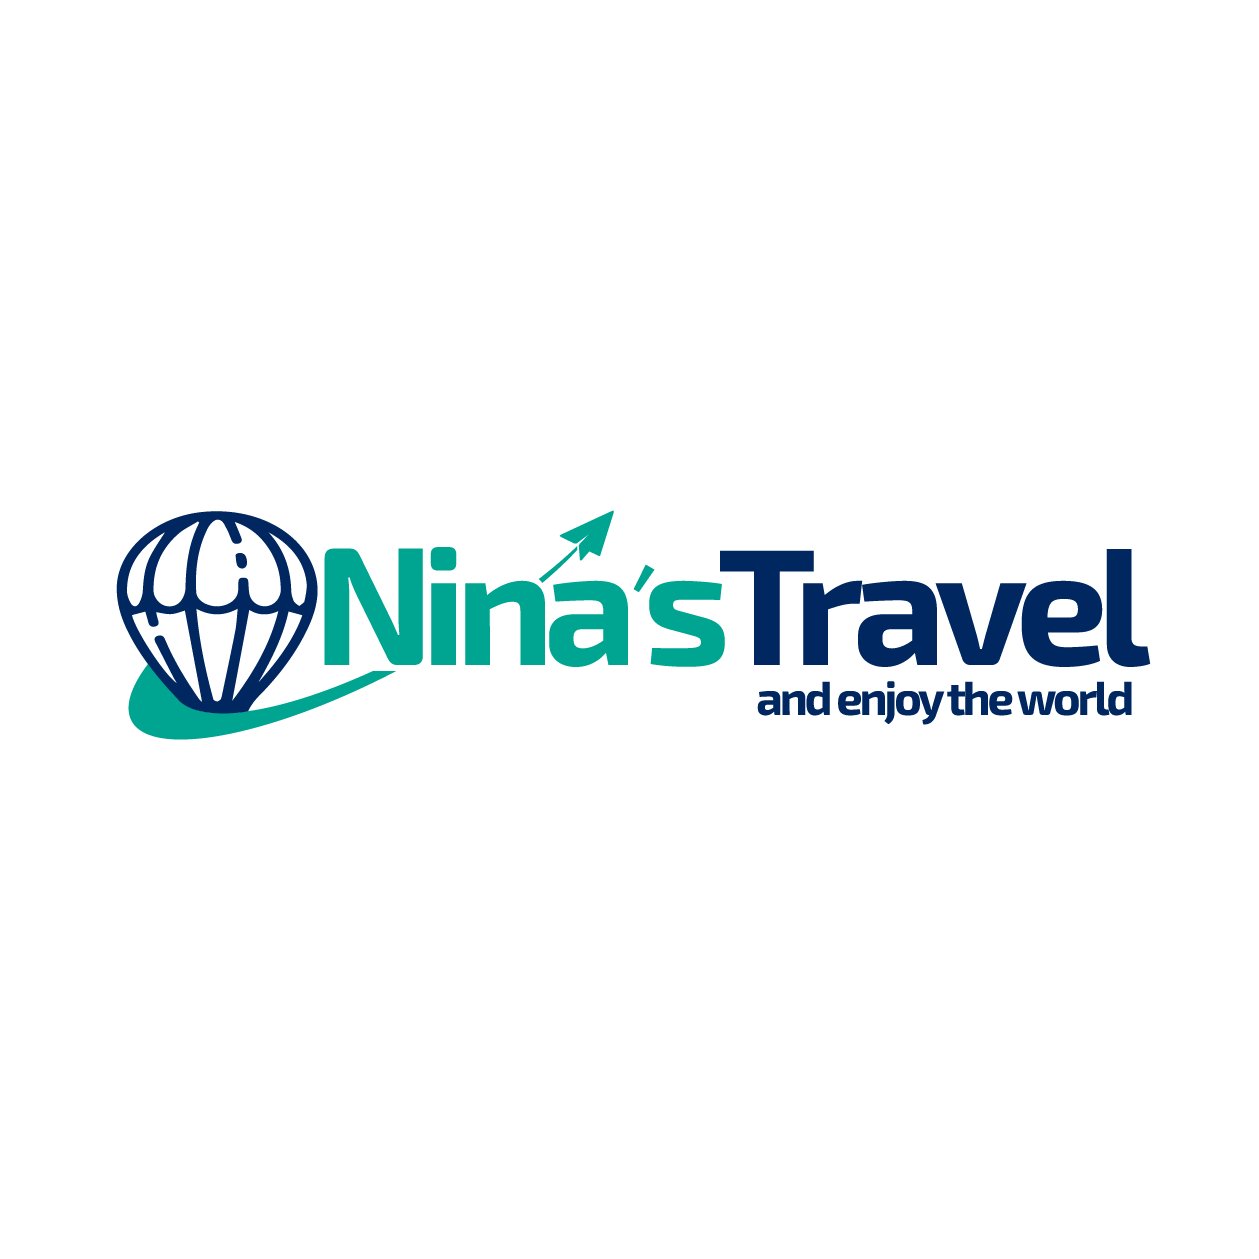 Nina's Travel Worldwide, C.A
R.I.F J-412252704
📍C.C Parque Aragua Piso 4 Pasillo Central 🇻🇪
#AgenciadeViajesenMaracay
👩🏻‍💻 Calificación en Google
⭐⭐⭐⭐⭐5.0